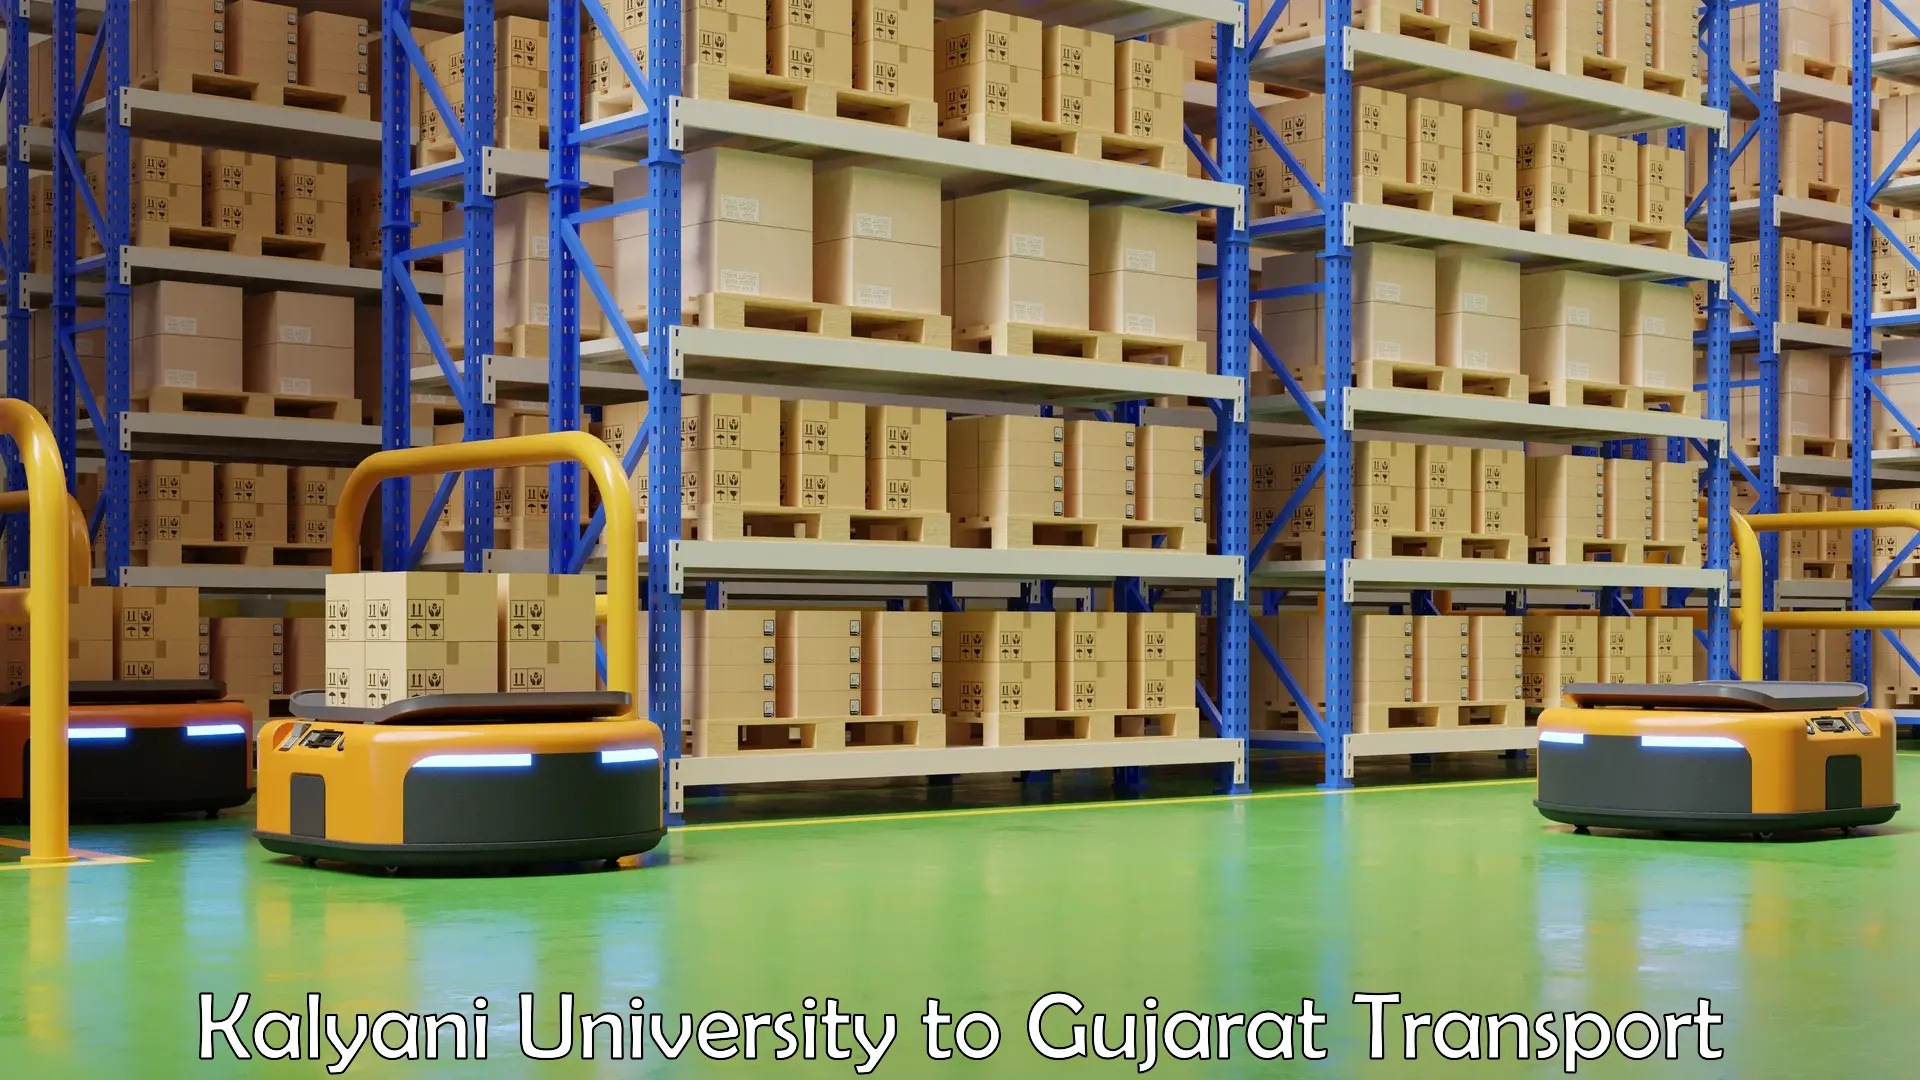 Pick up transport service Kalyani University to Gujarat